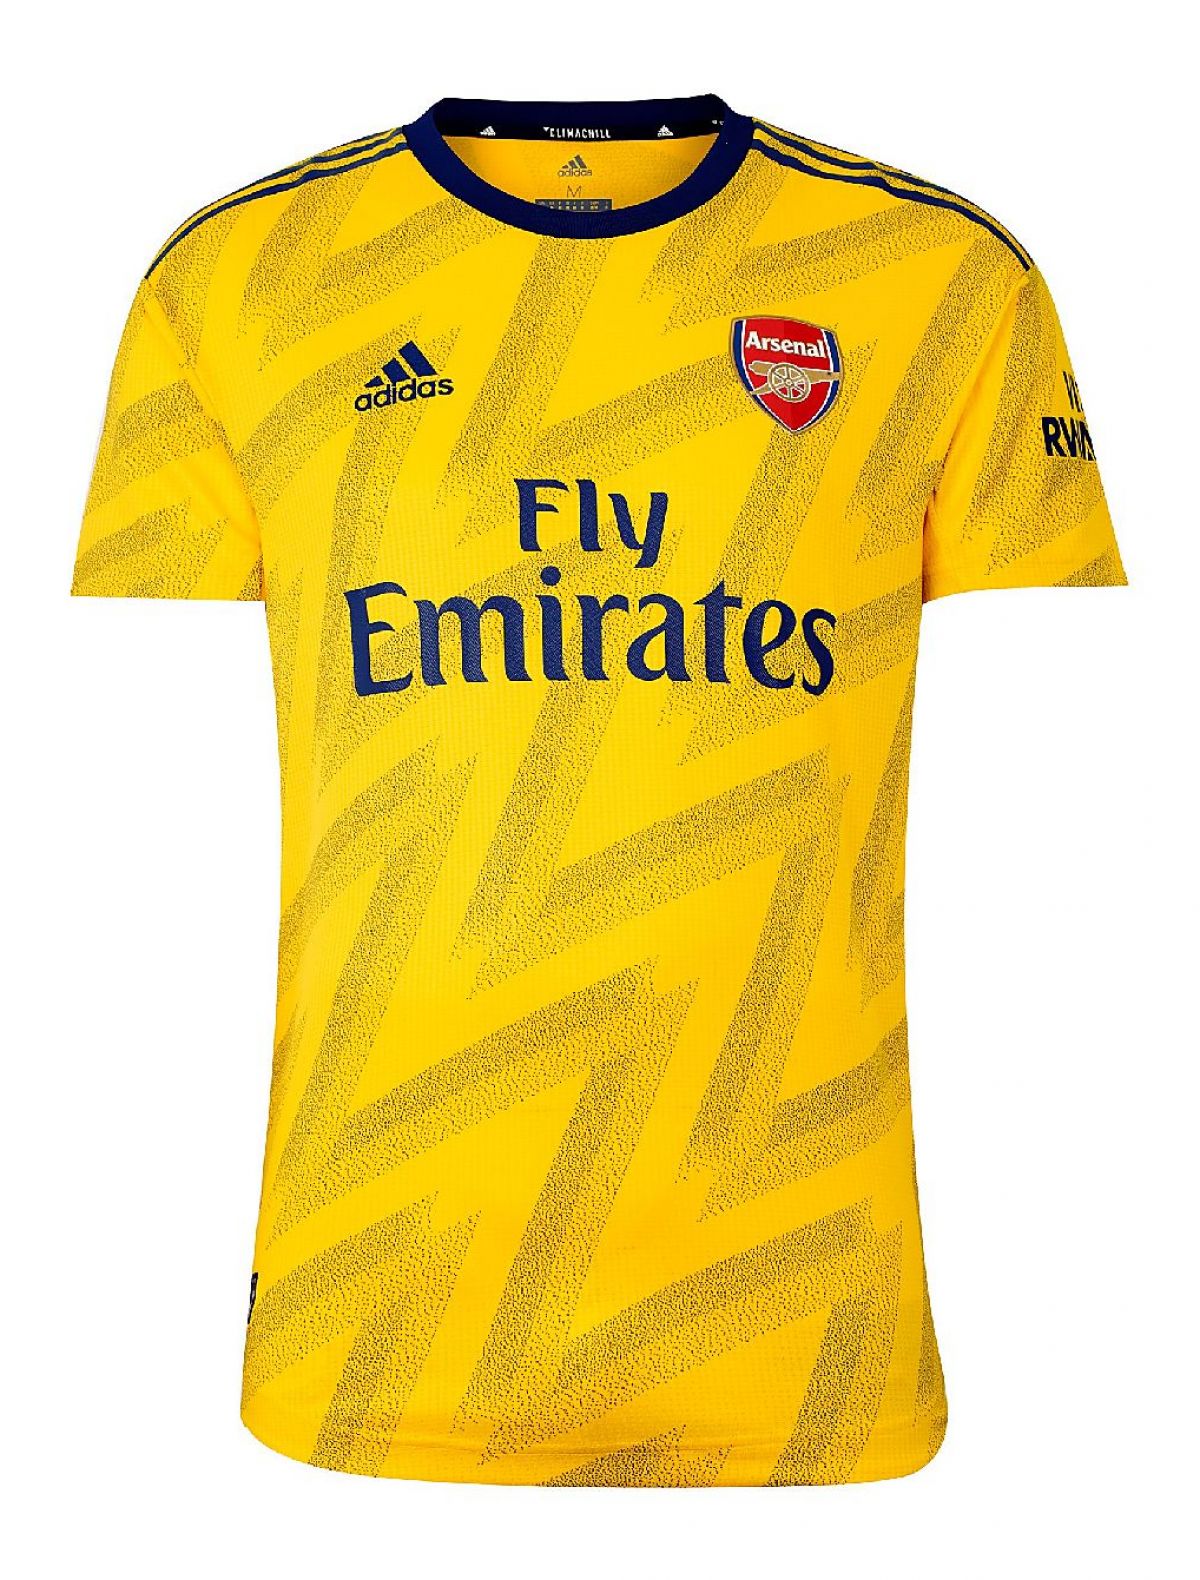 Arsenal FC 2019-20 Away Kit